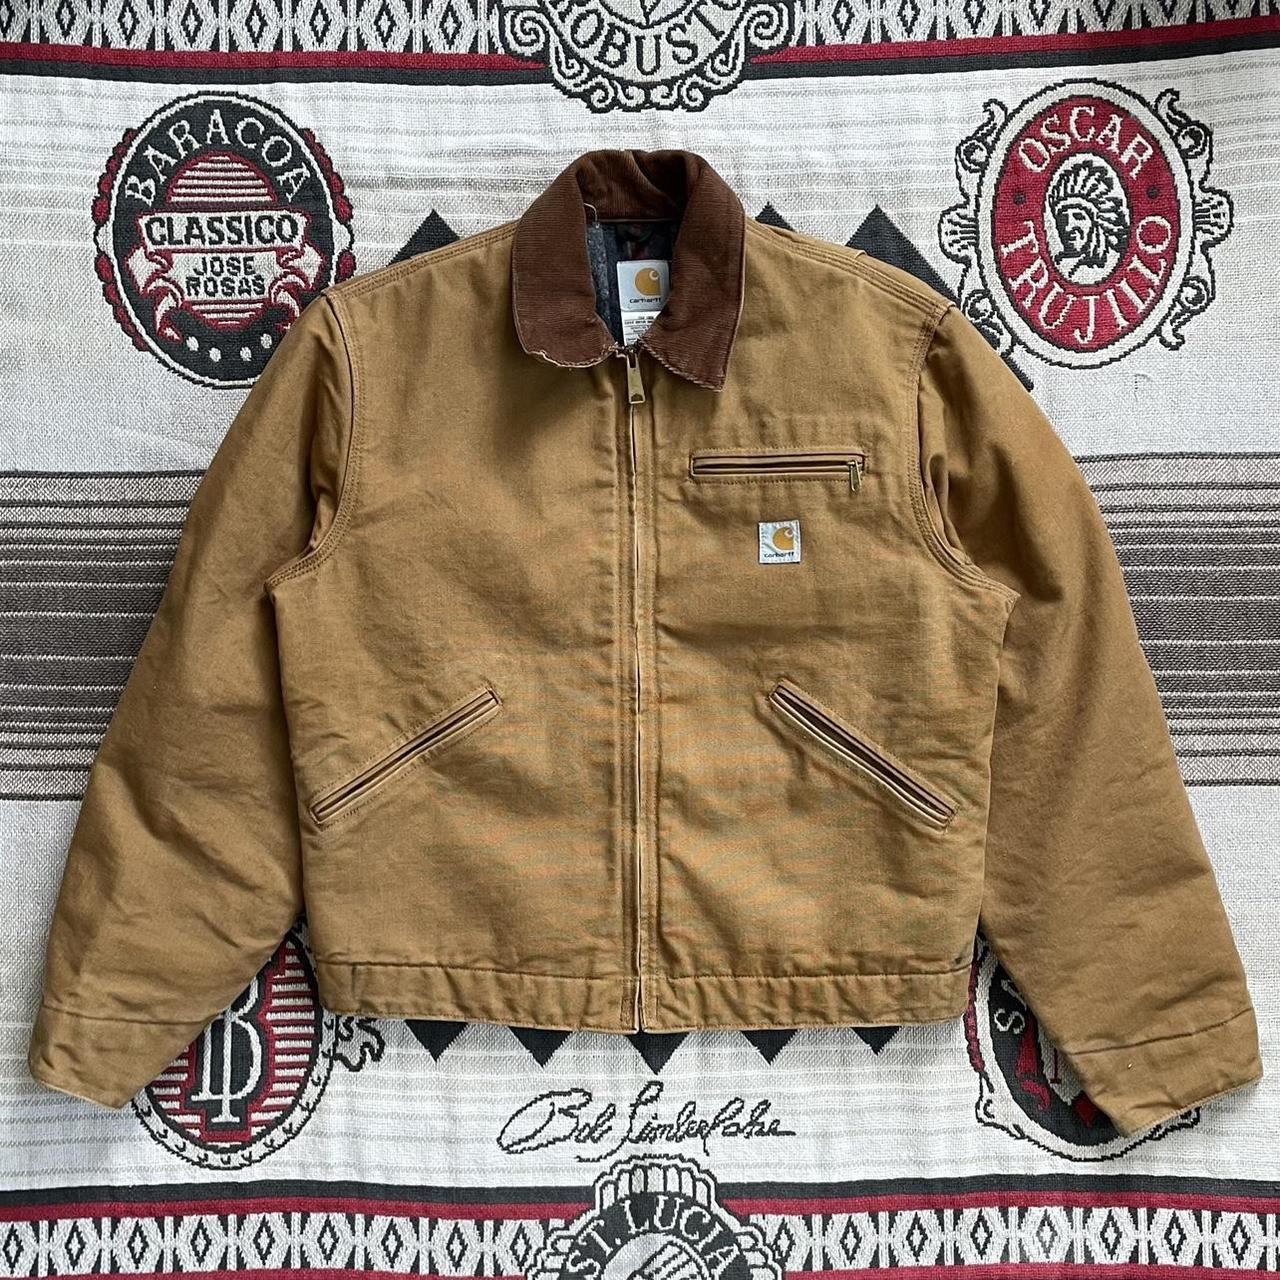 Product Image 1 - Carhartt Detroit Jacket 
-Iconic jacket